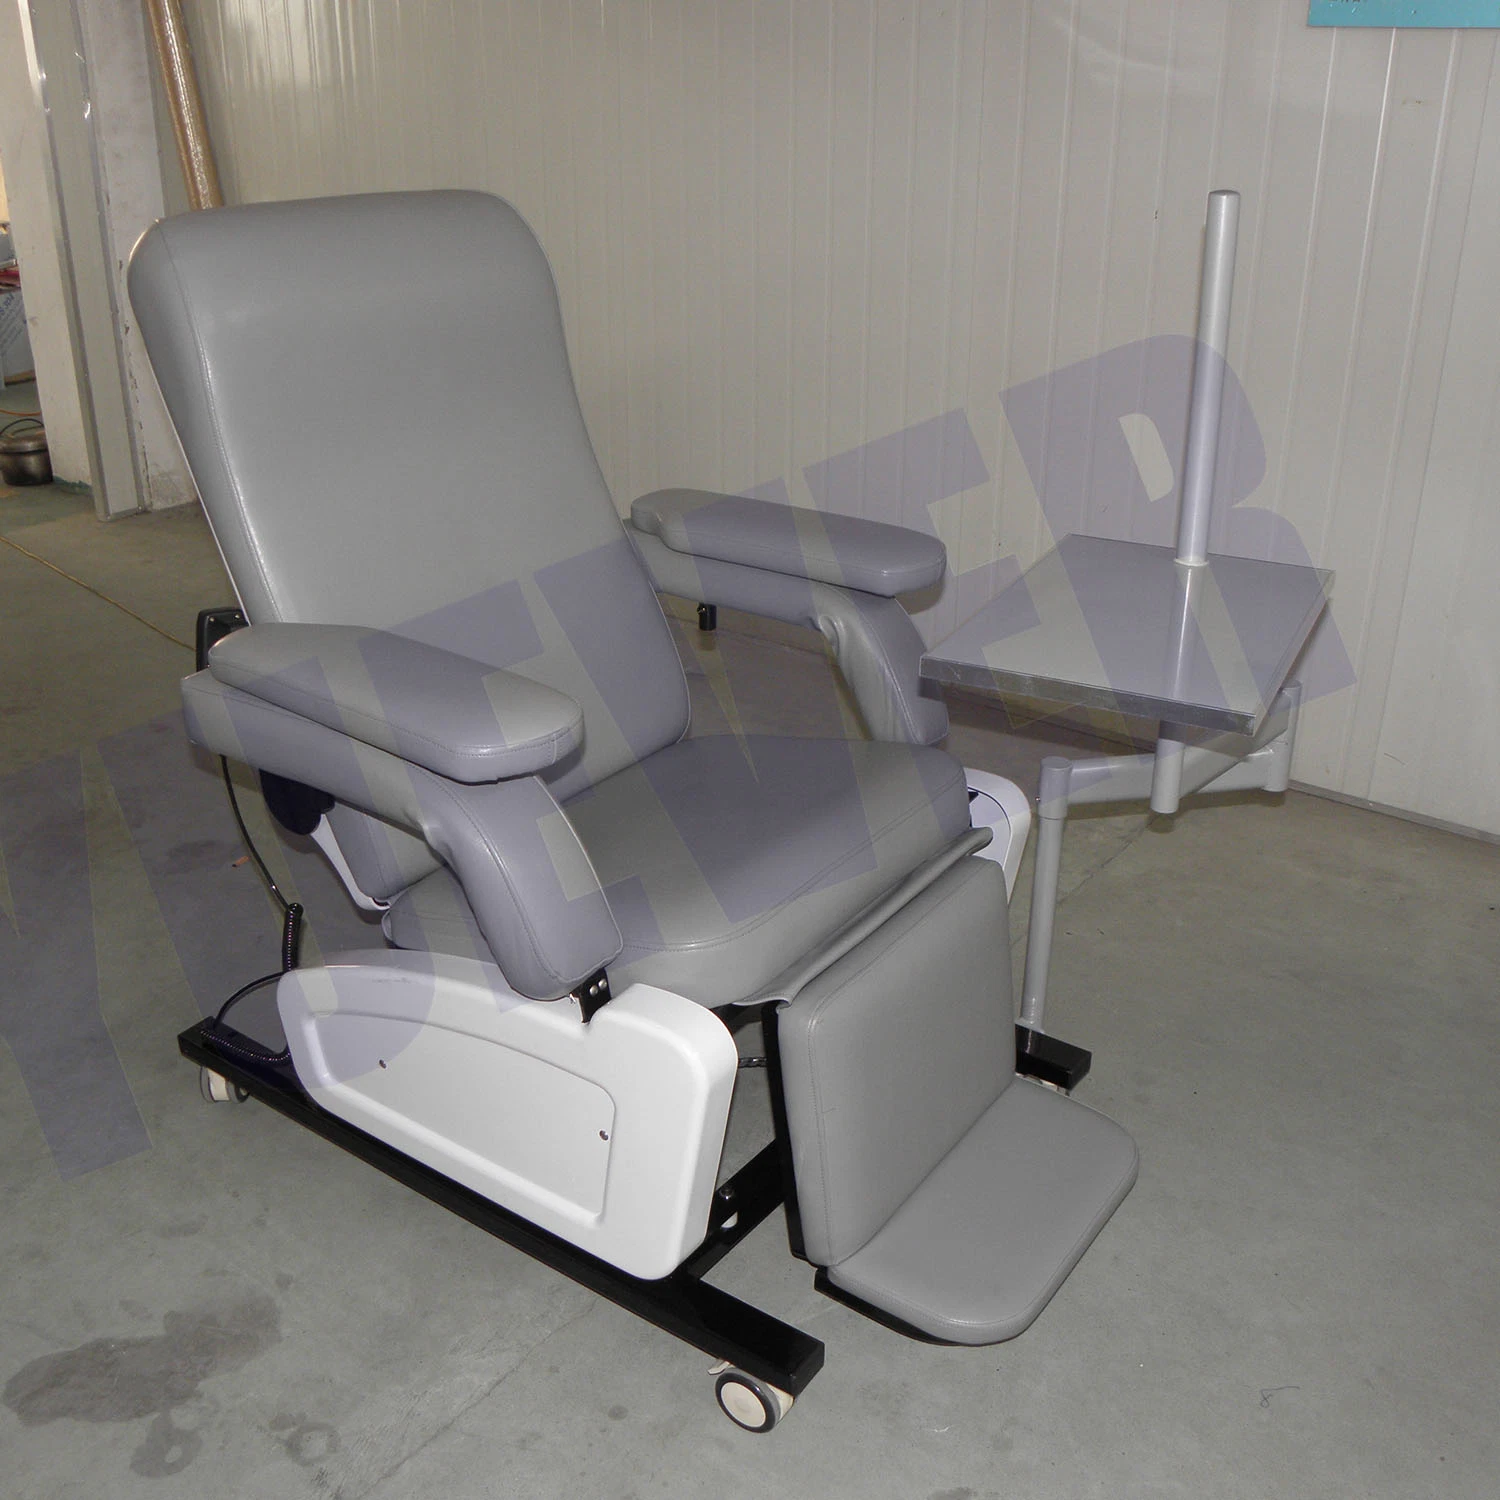 Chine Factory réglable de mobilier d'hôpital multifonction chaise de collecte de sang électrique